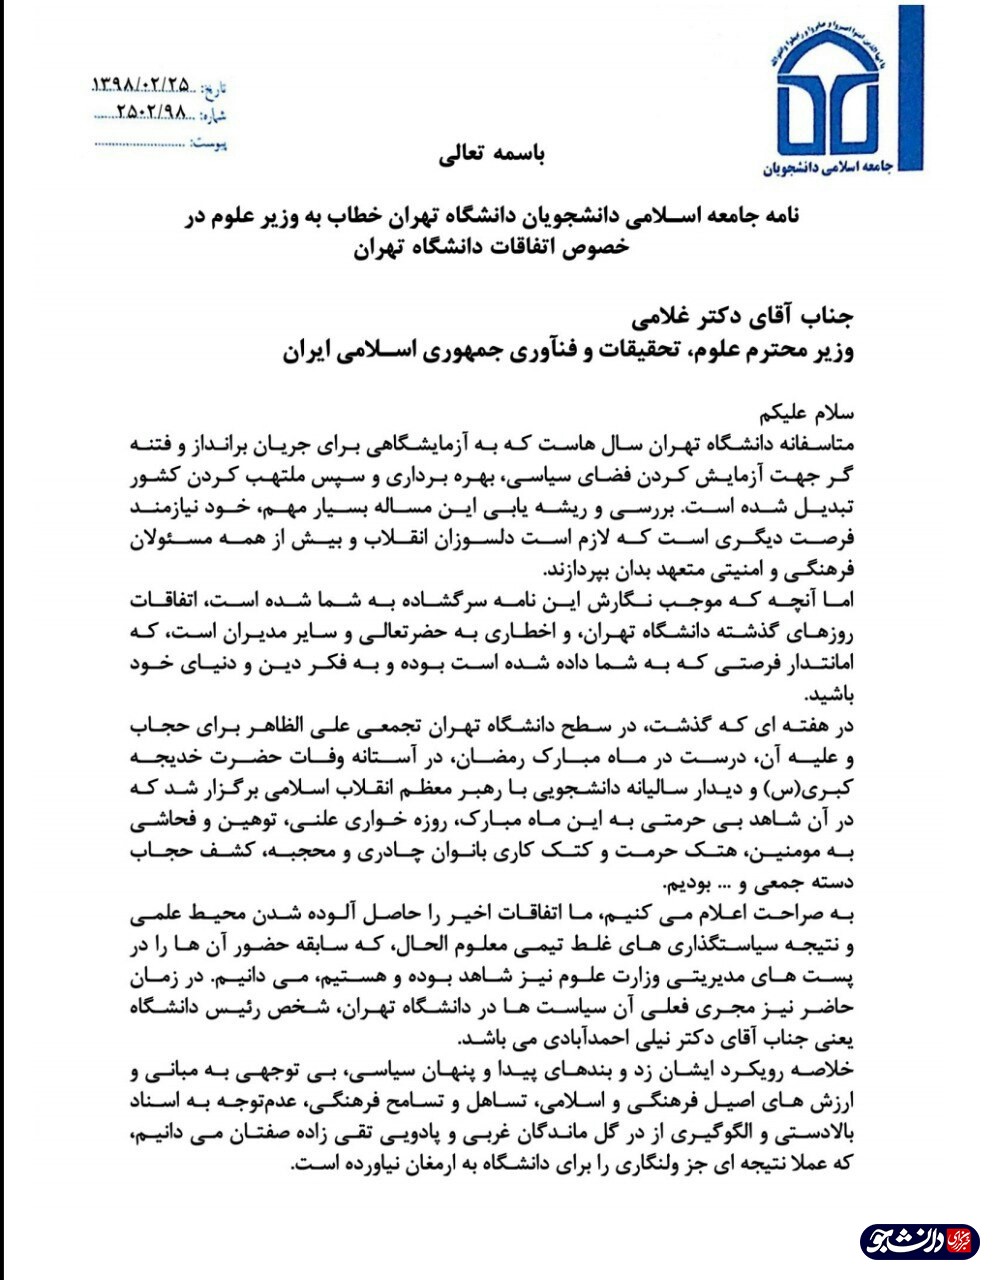 نامه جامعه اسلامی دانشگاه تهران خطاب به وزیر علوم در پس اتفاقات دانشگاه تهران